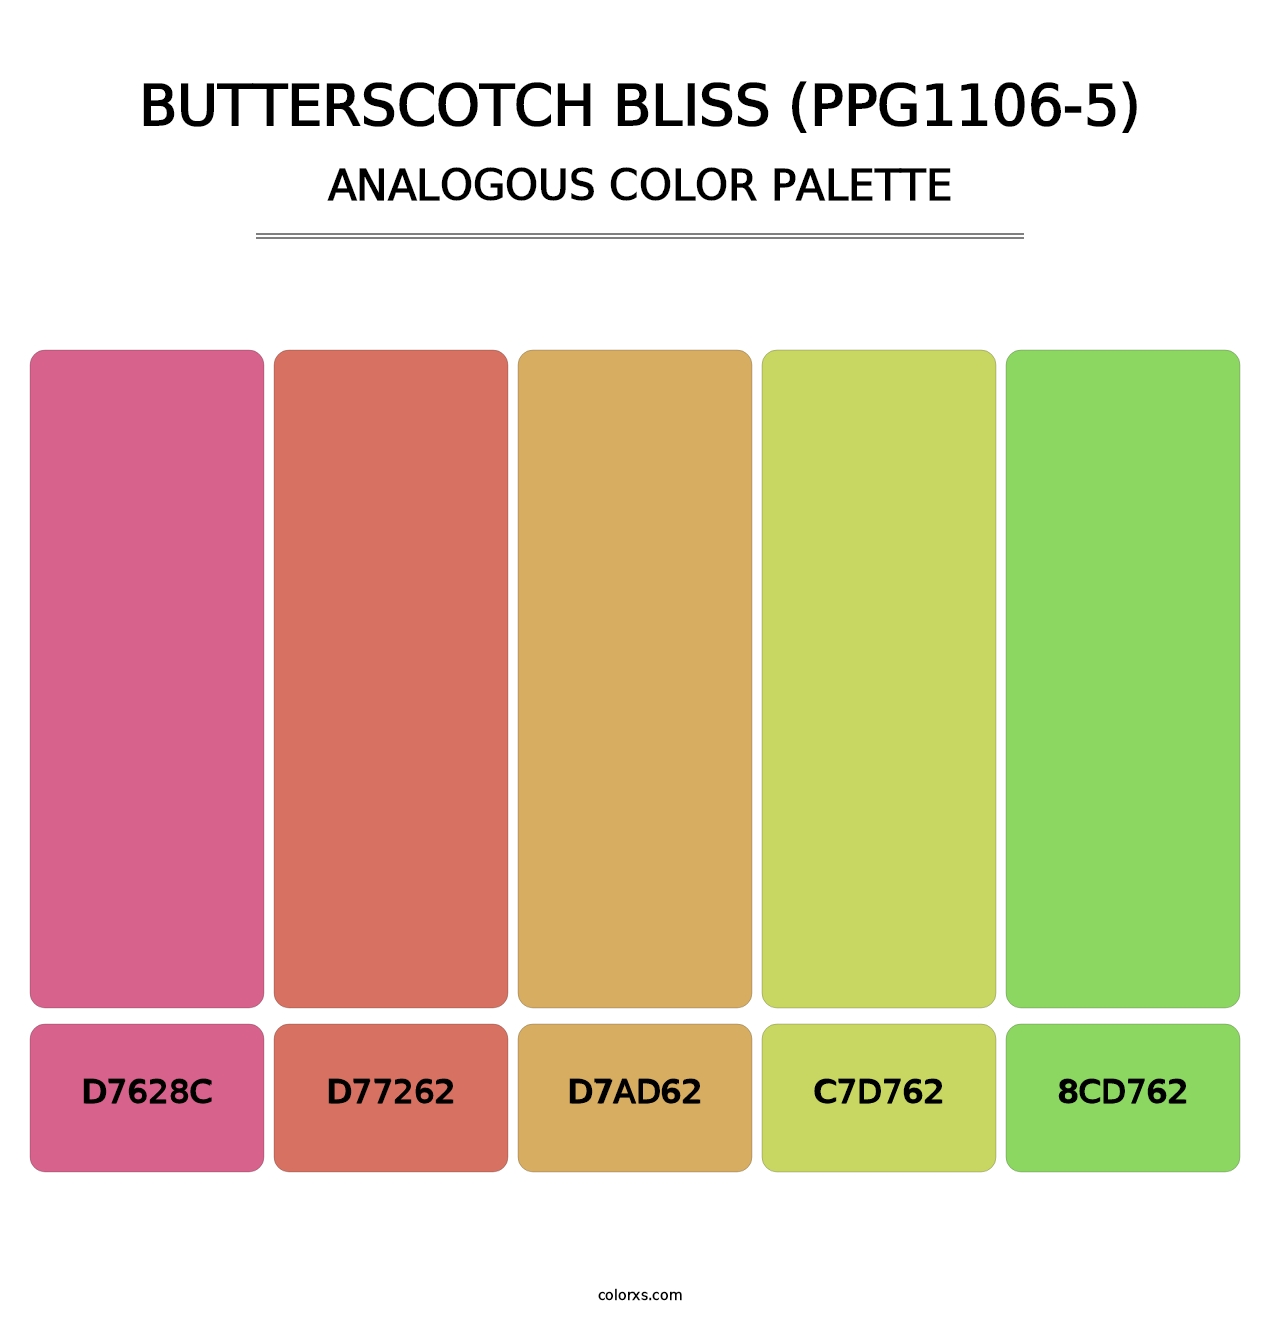 Butterscotch Bliss (PPG1106-5) - Analogous Color Palette